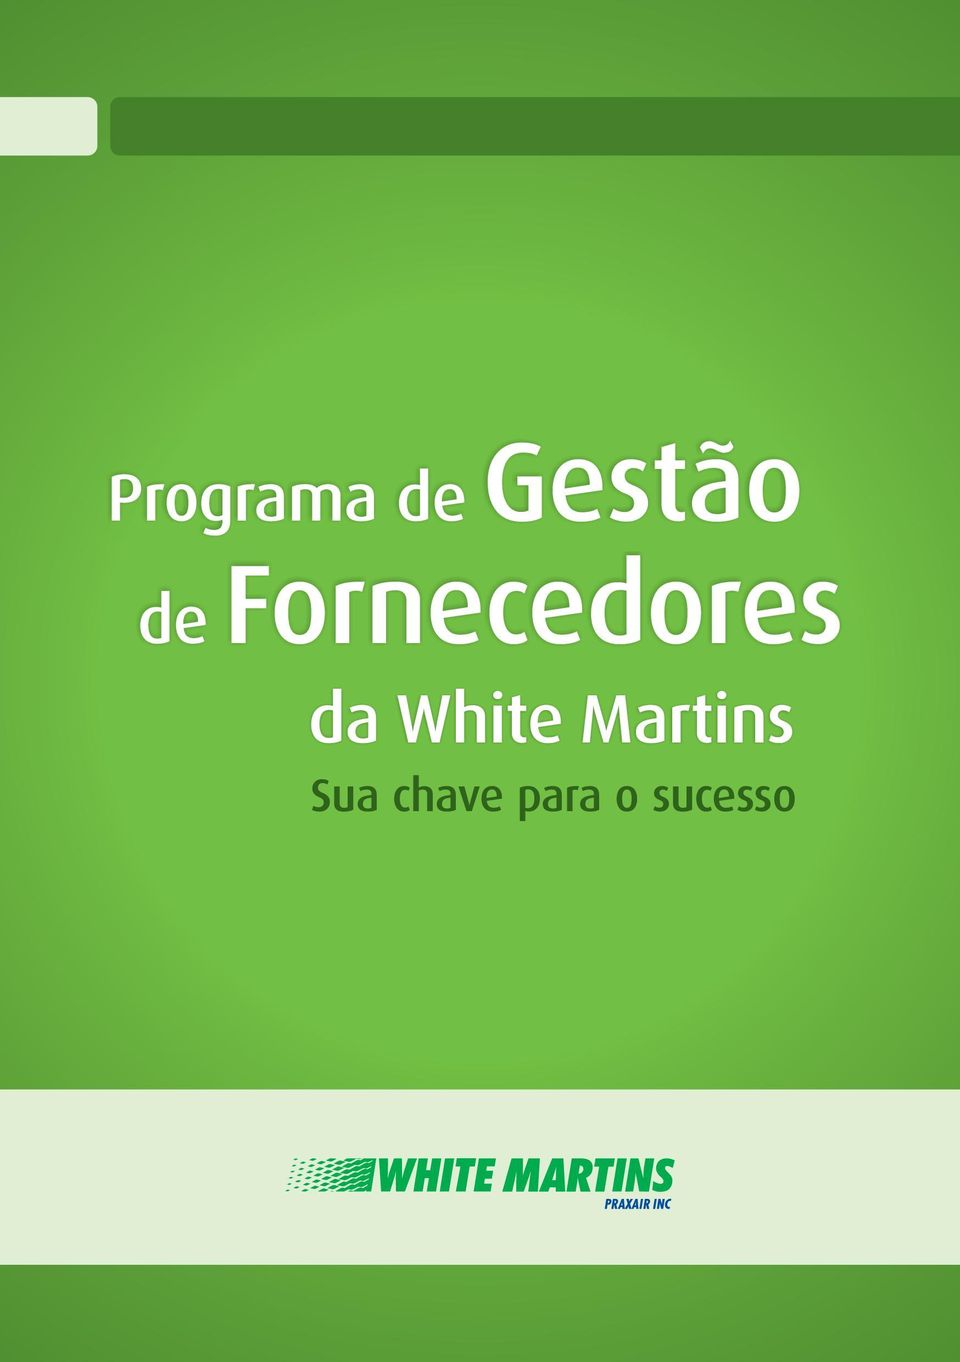 White Martins Sua